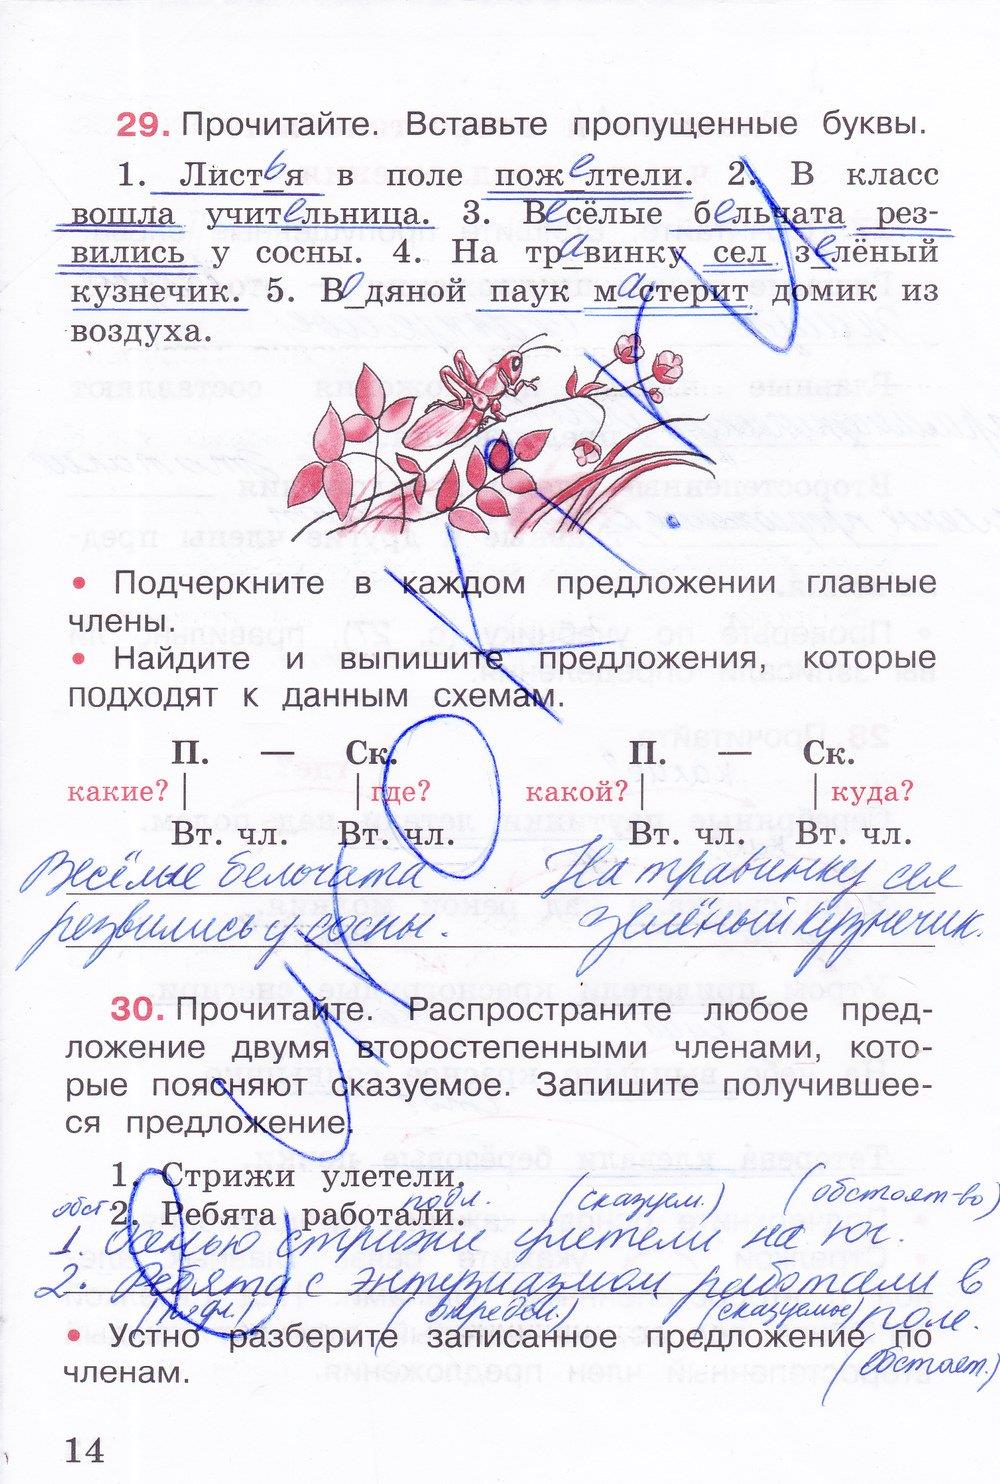 Русский язык тетрадь рабочая первый часть